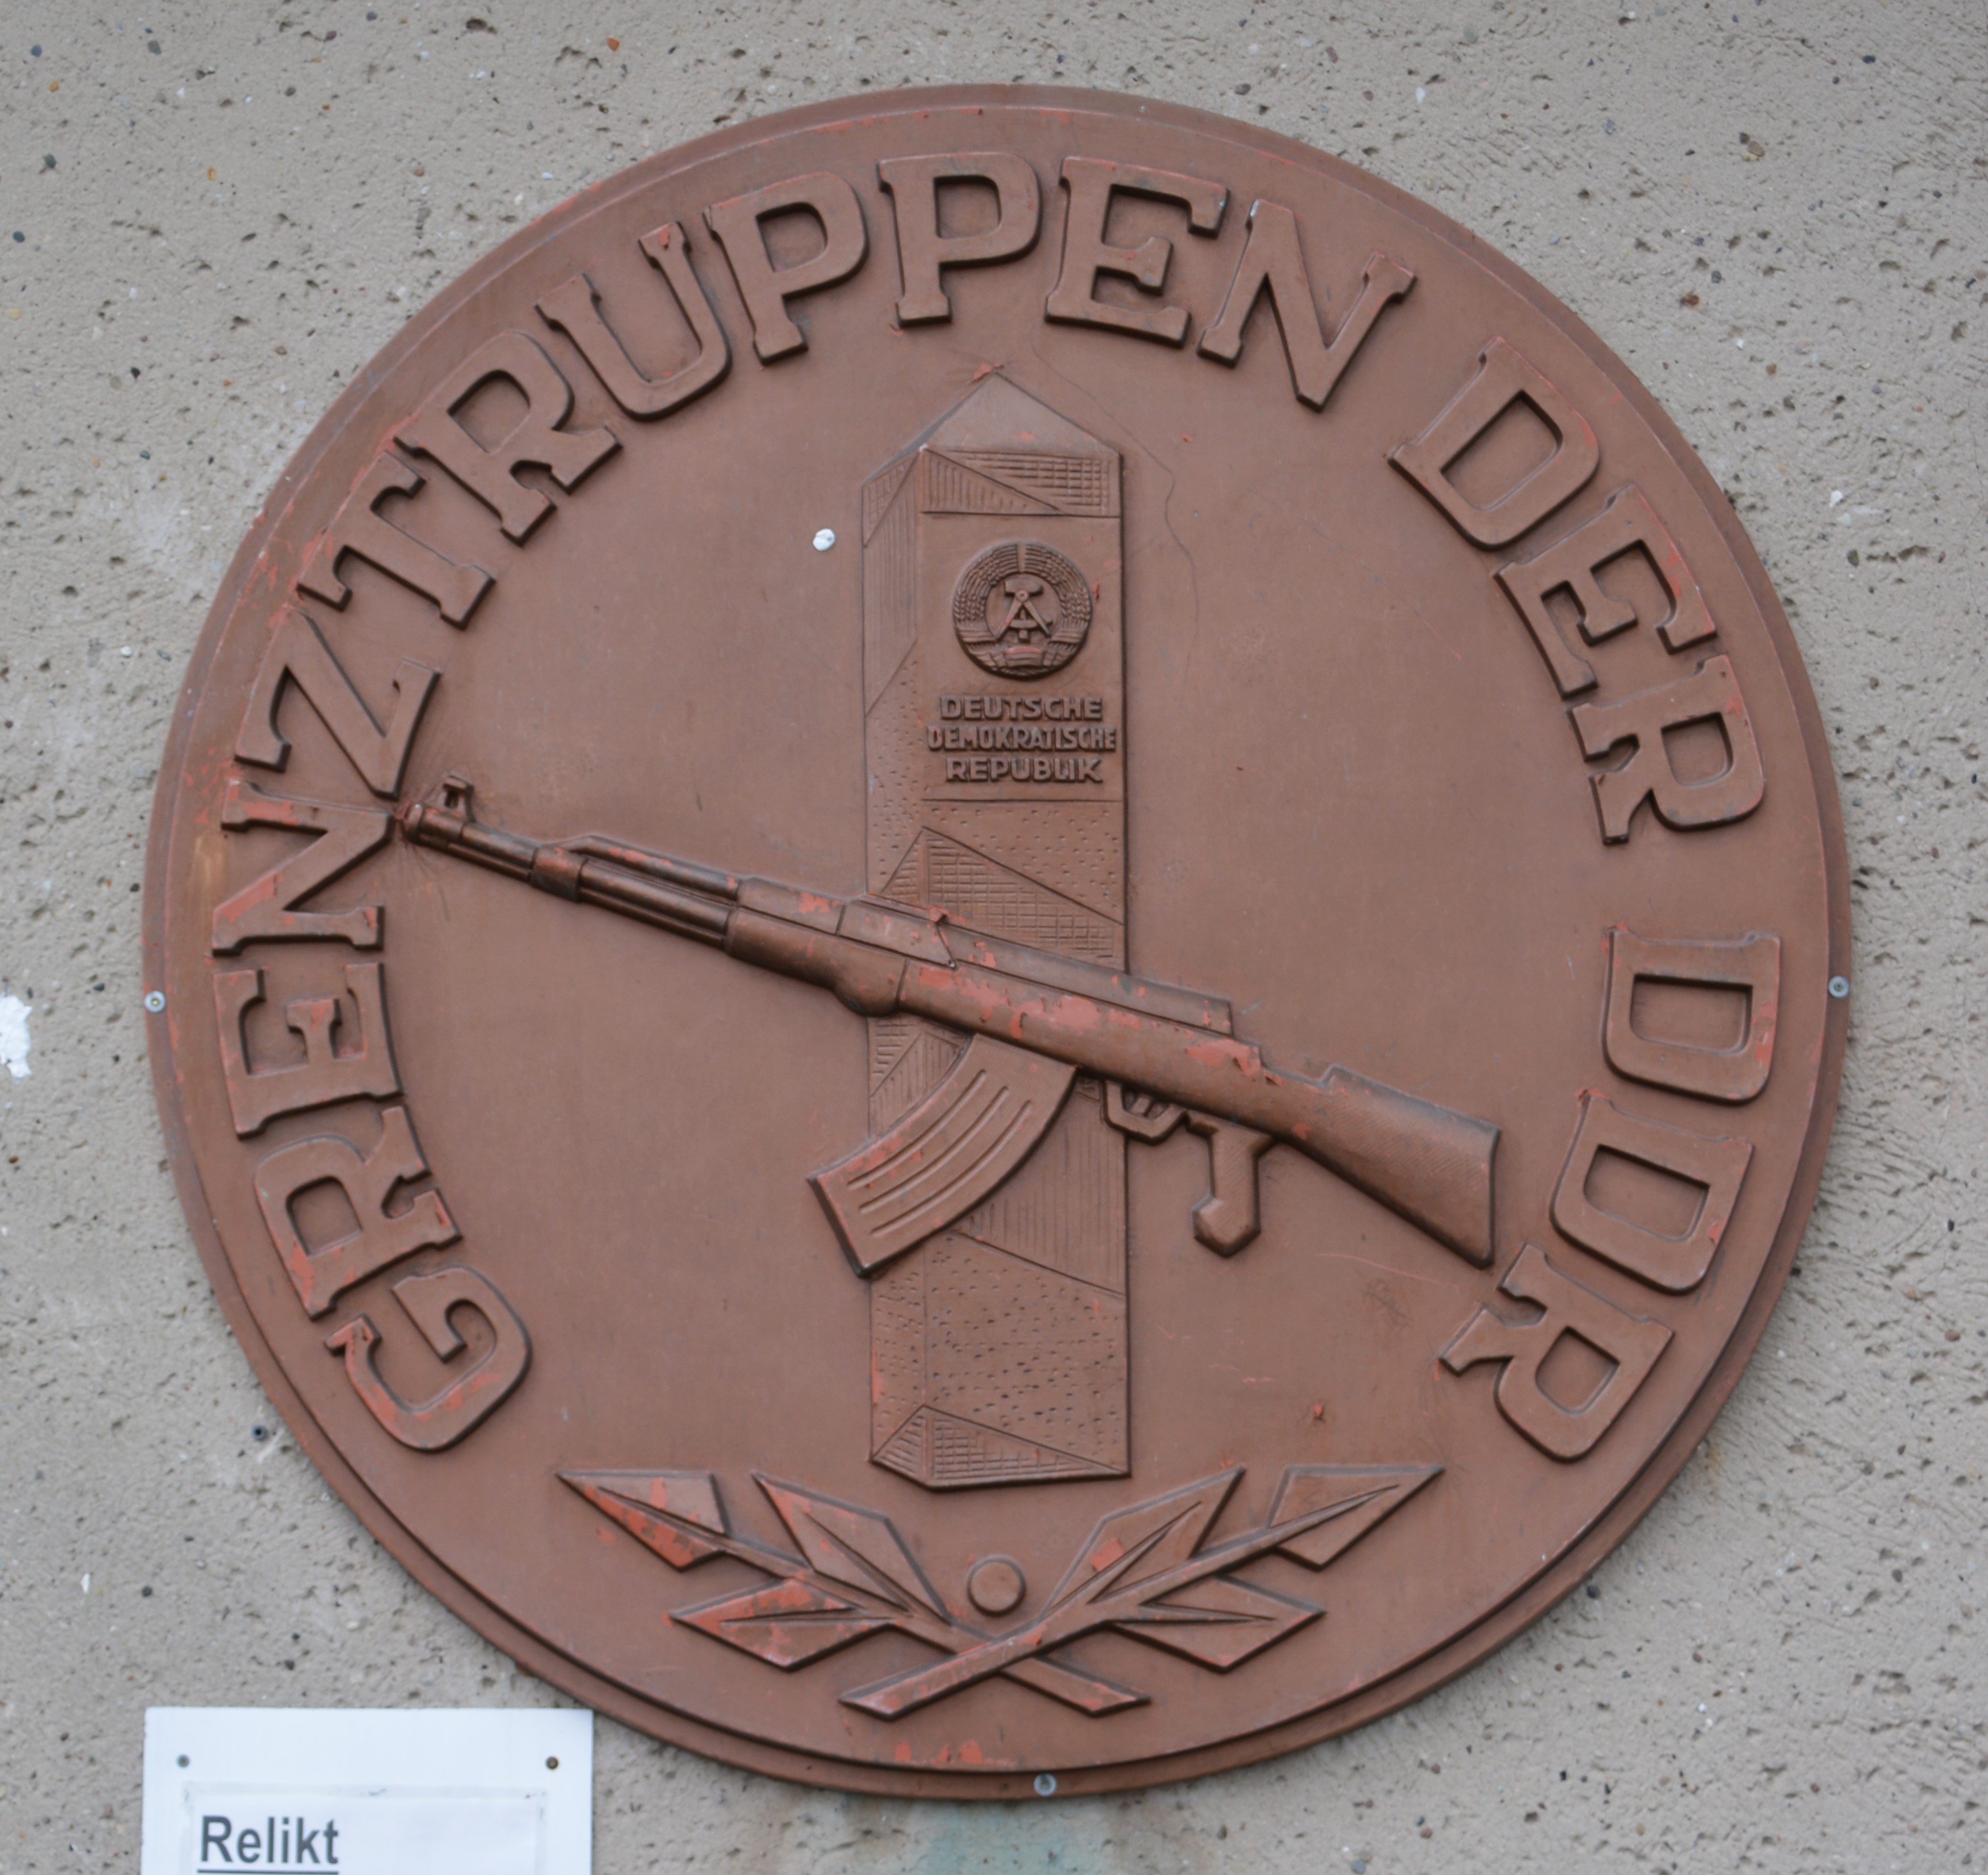 Wandschild der Kaserne der "Grenztruppen der DDR" in Perleberg (DDR Geschichtsmuseum im Dokumentationszentrum Perleberg CC BY-SA)